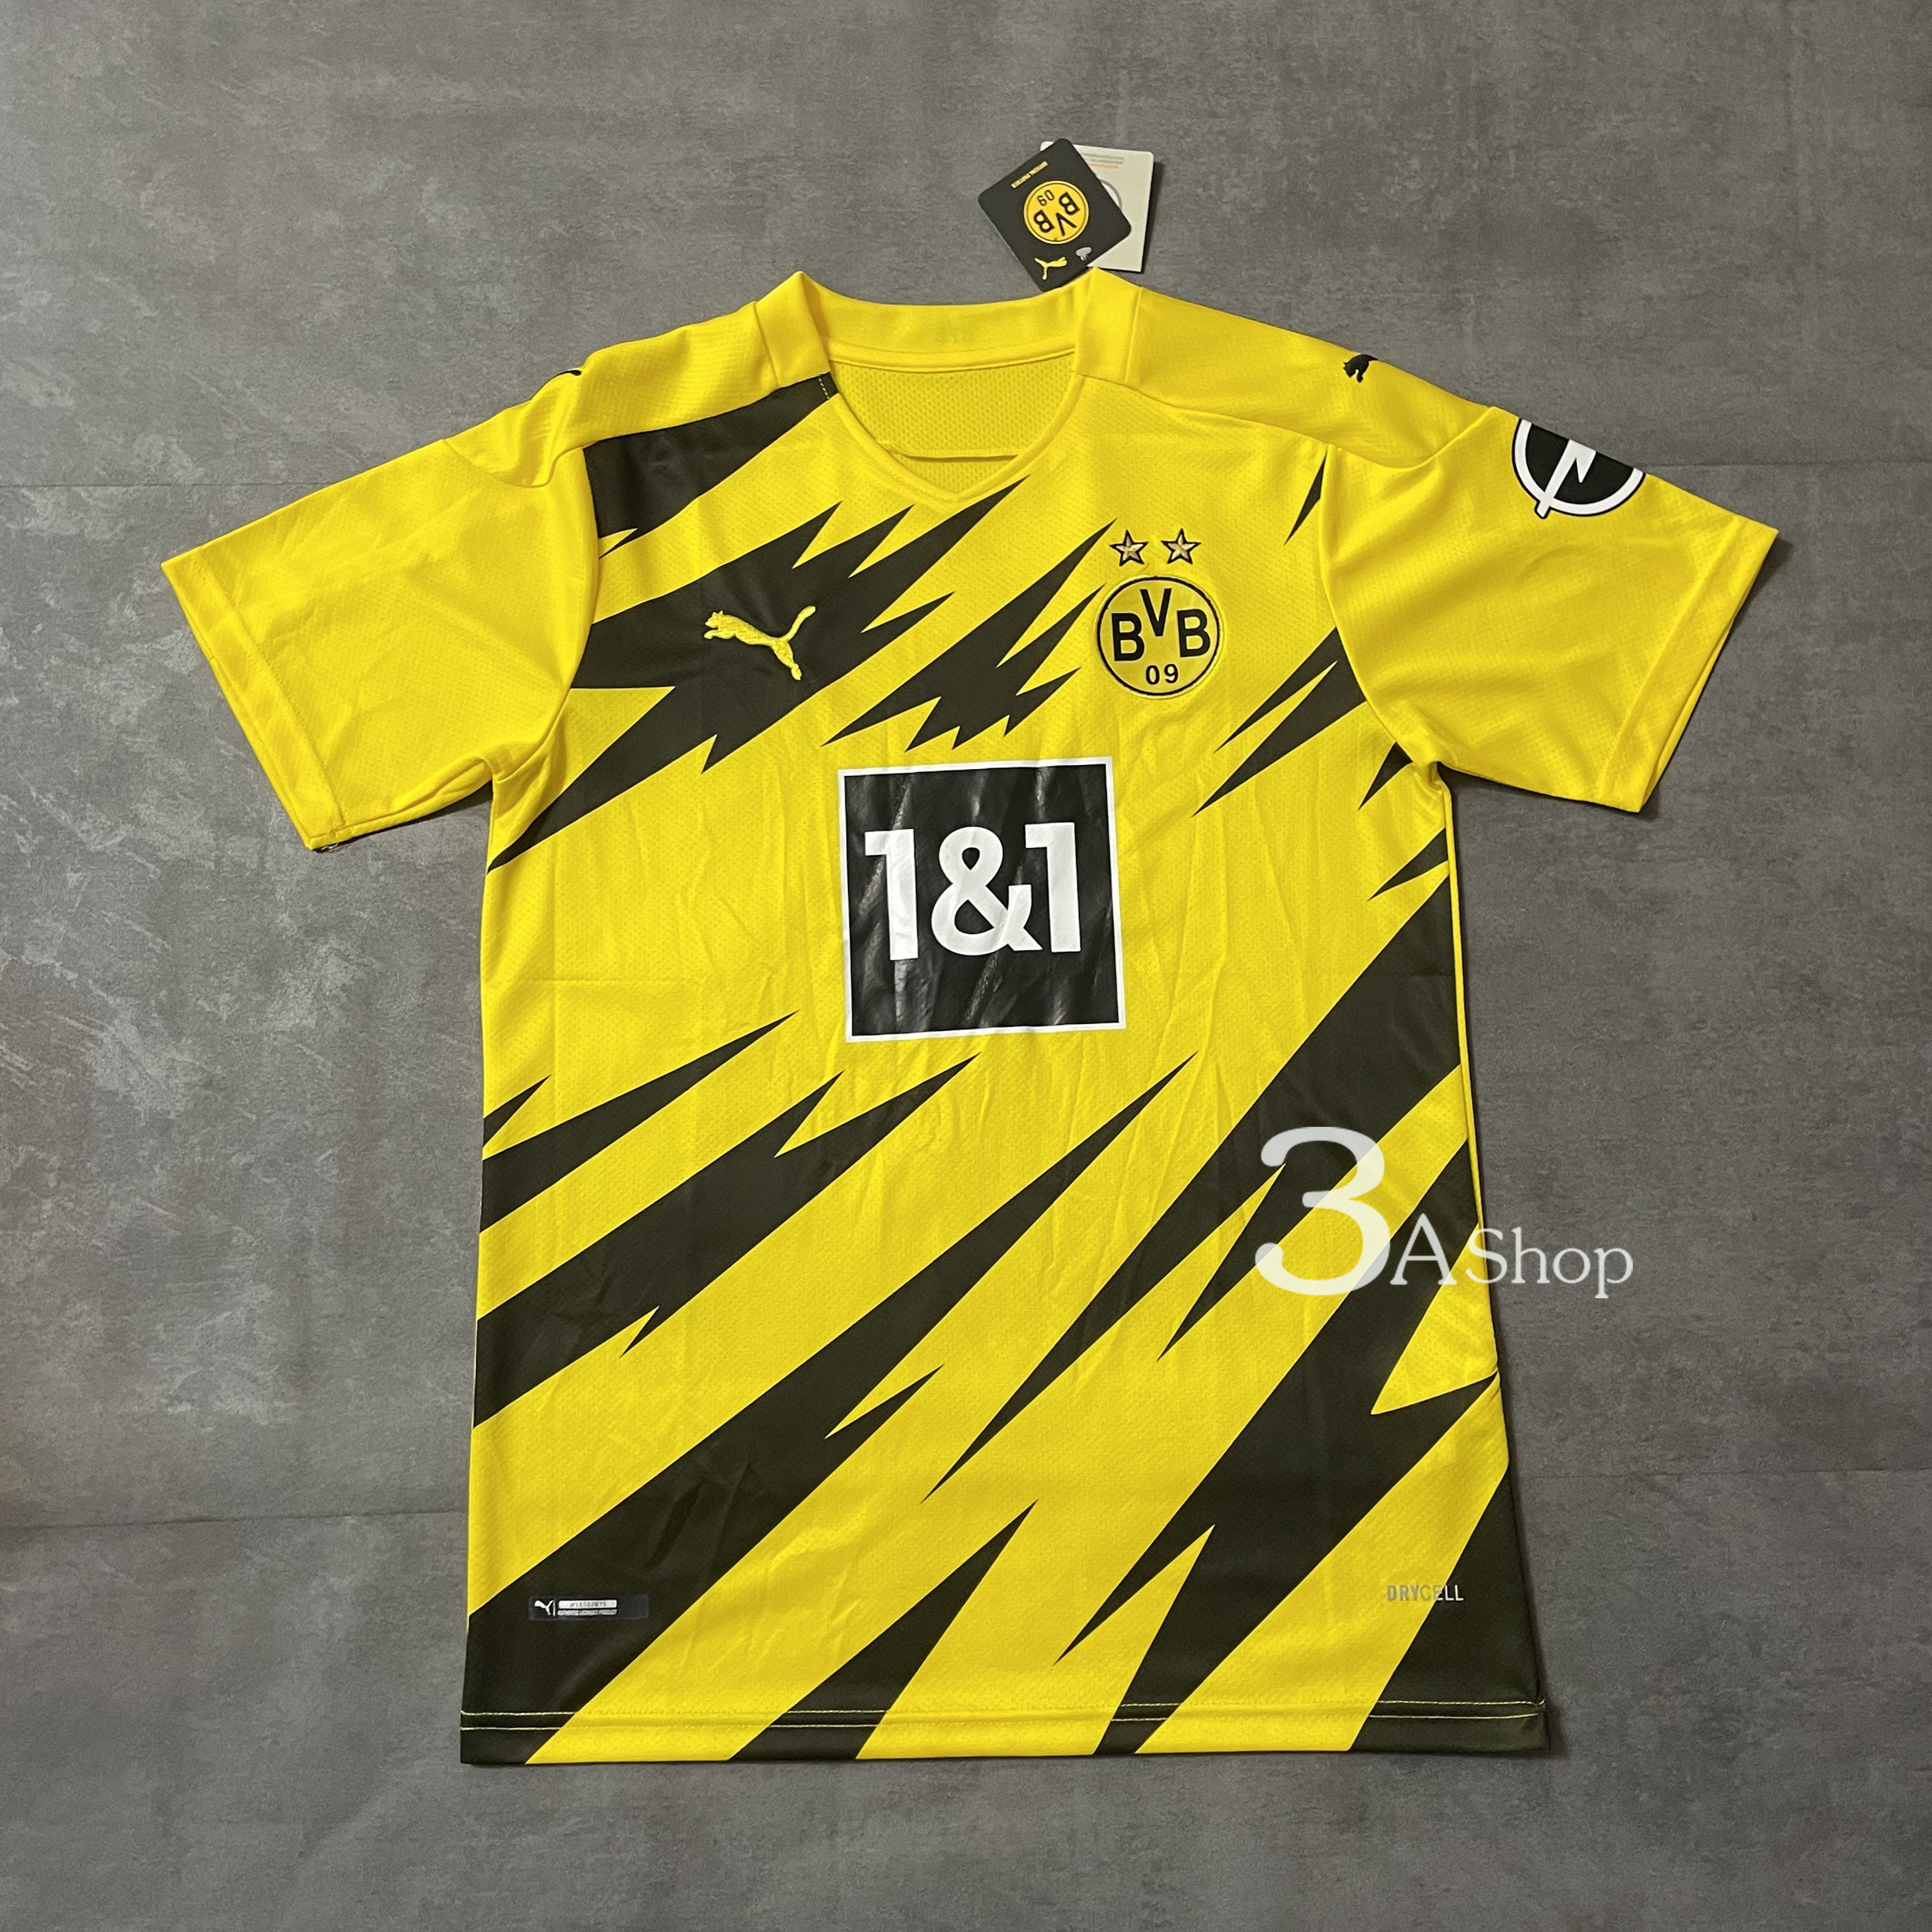 Dortmund 20/21 HOME FOOTBALL SHIRT SOCCER  เสื้อบอล เสื้อฟุตบอลชาย เสื้อบอลชาย เสื้อฟุตบอล เสื้อกีฬาชาย2021 เสื้อทีมดอร์ดมุน ปี21 เกรด 3A